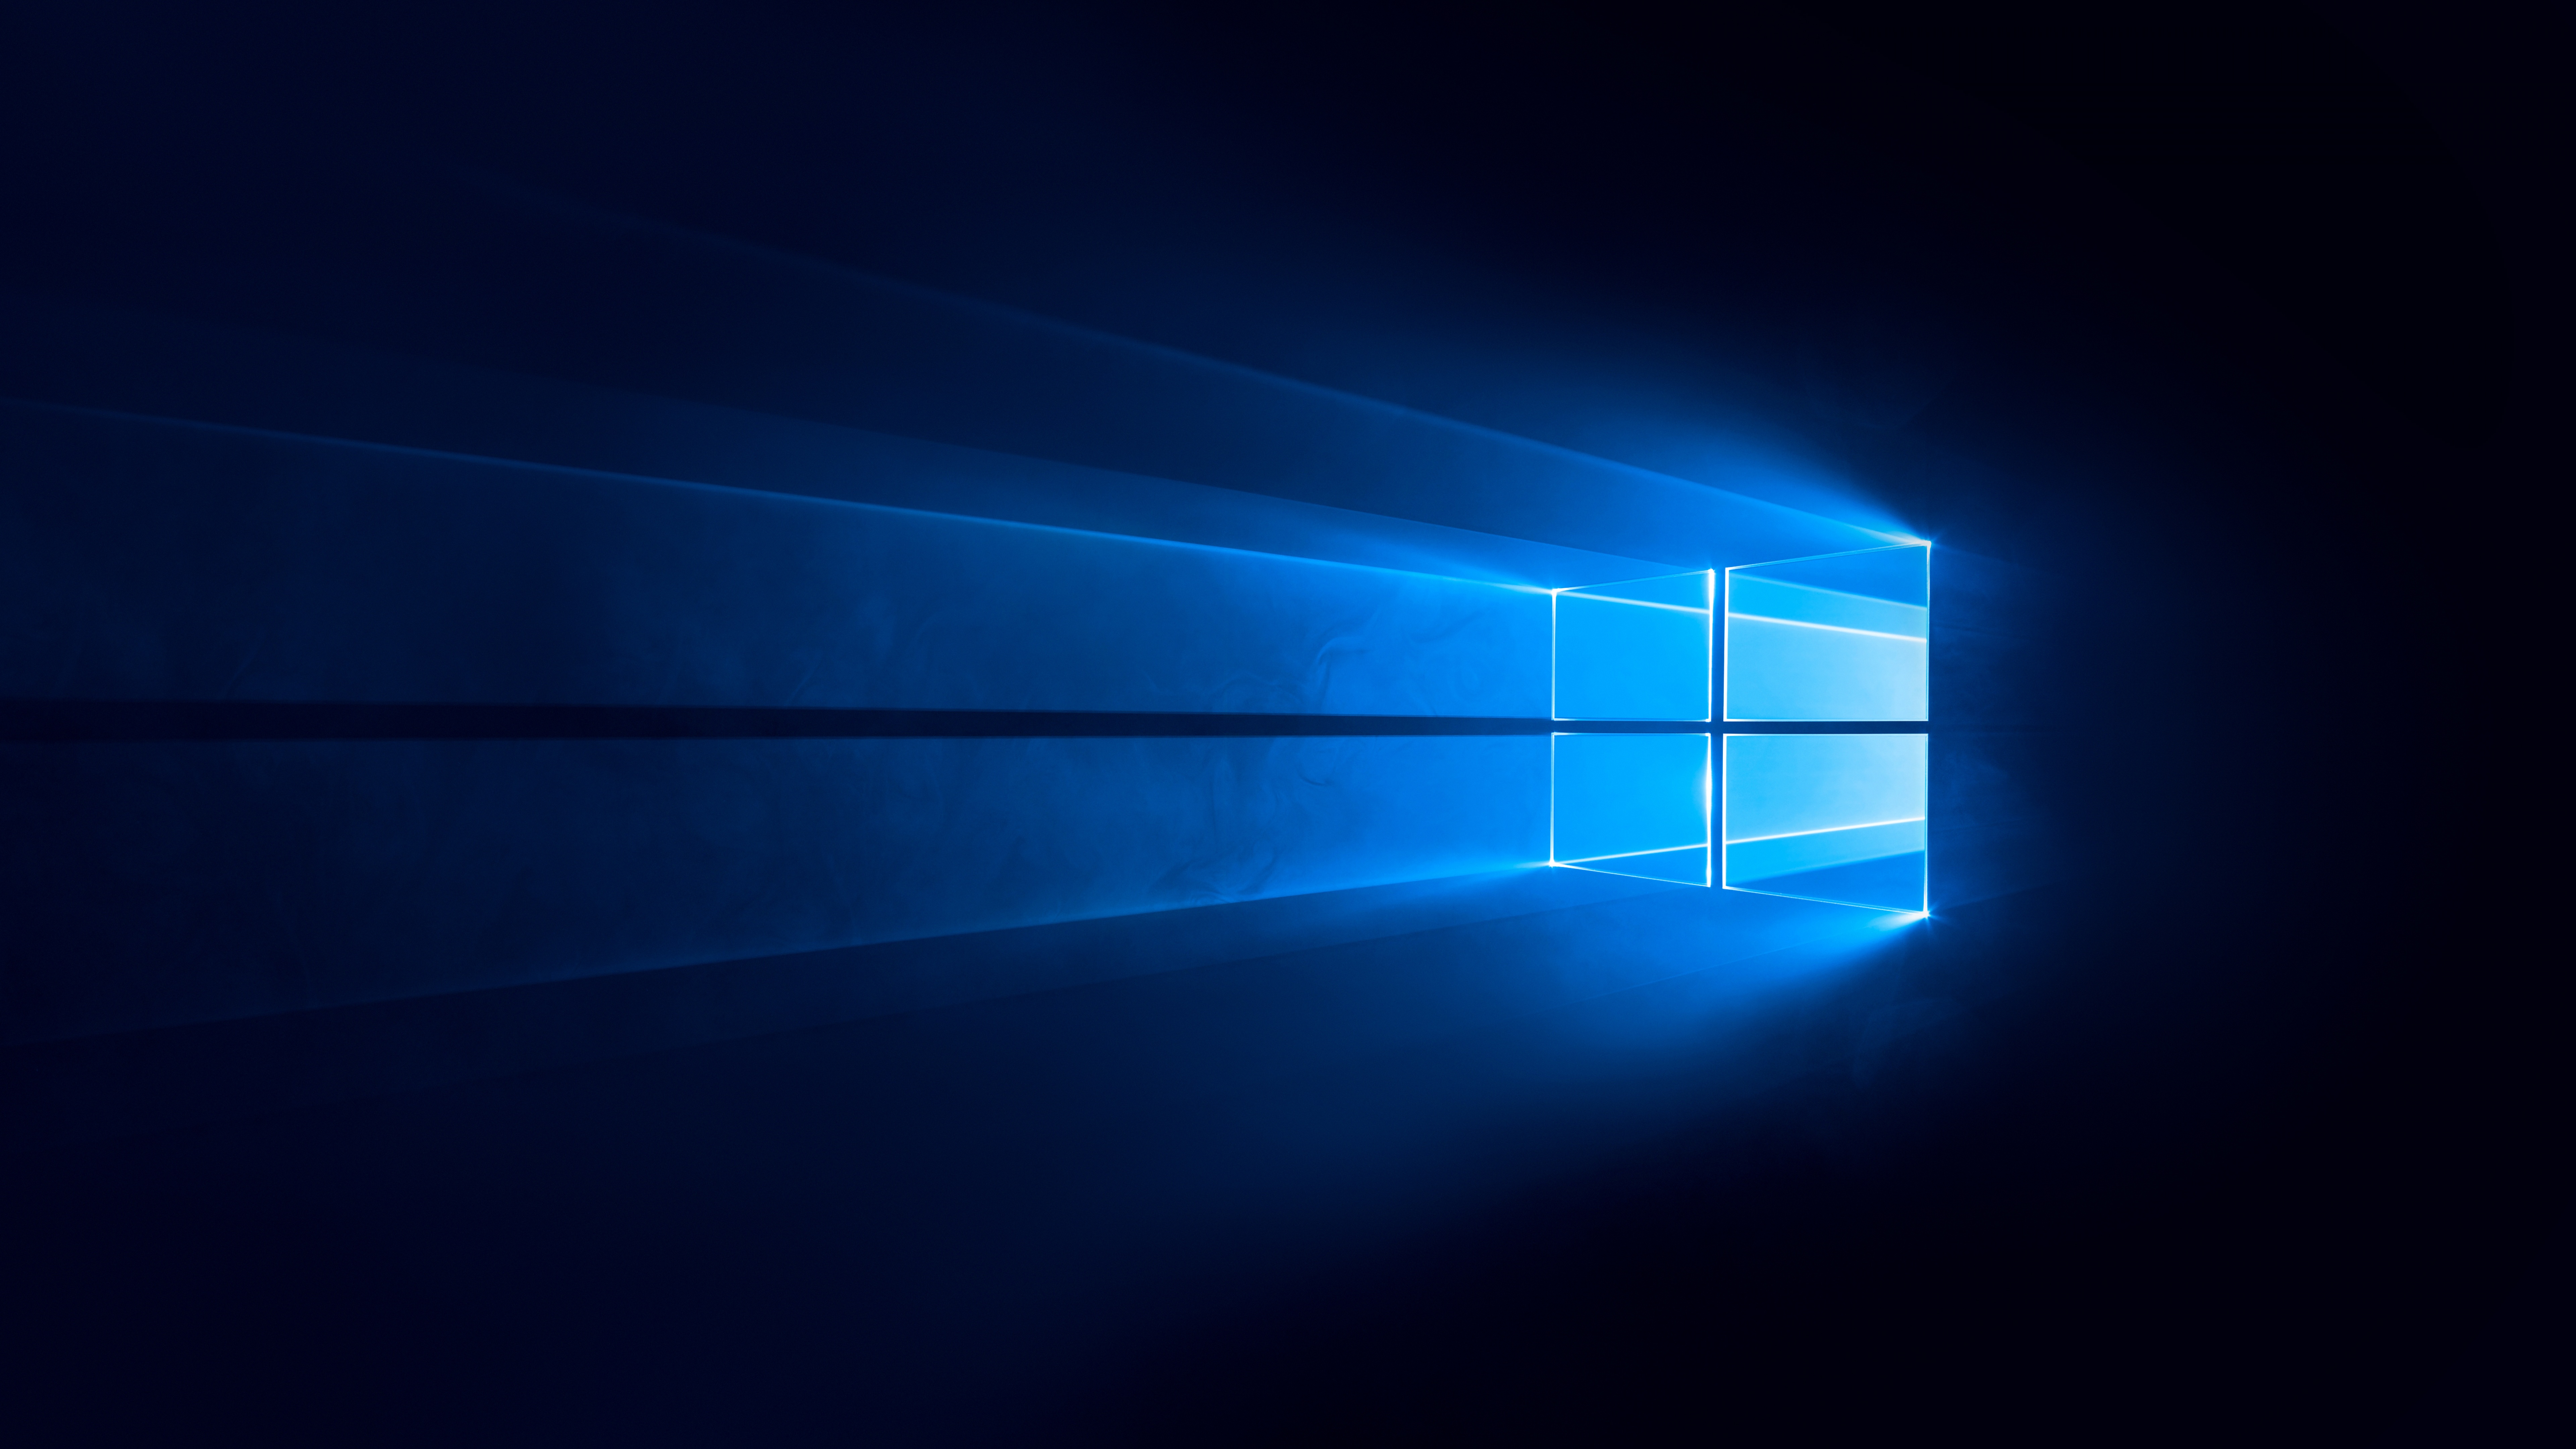 Hình nền Windows 10 4K với nền đen và màu xanh sẽ giúp cho chiếc máy tính của bạn trở nên thật đặc biệt và thu hút hơn. Cùng với đó là công nghệ tiên tiến và hiện đại, hình nền này sẽ đem đến cho bạn một trải nghiệm hình ảnh tuyệt vời.